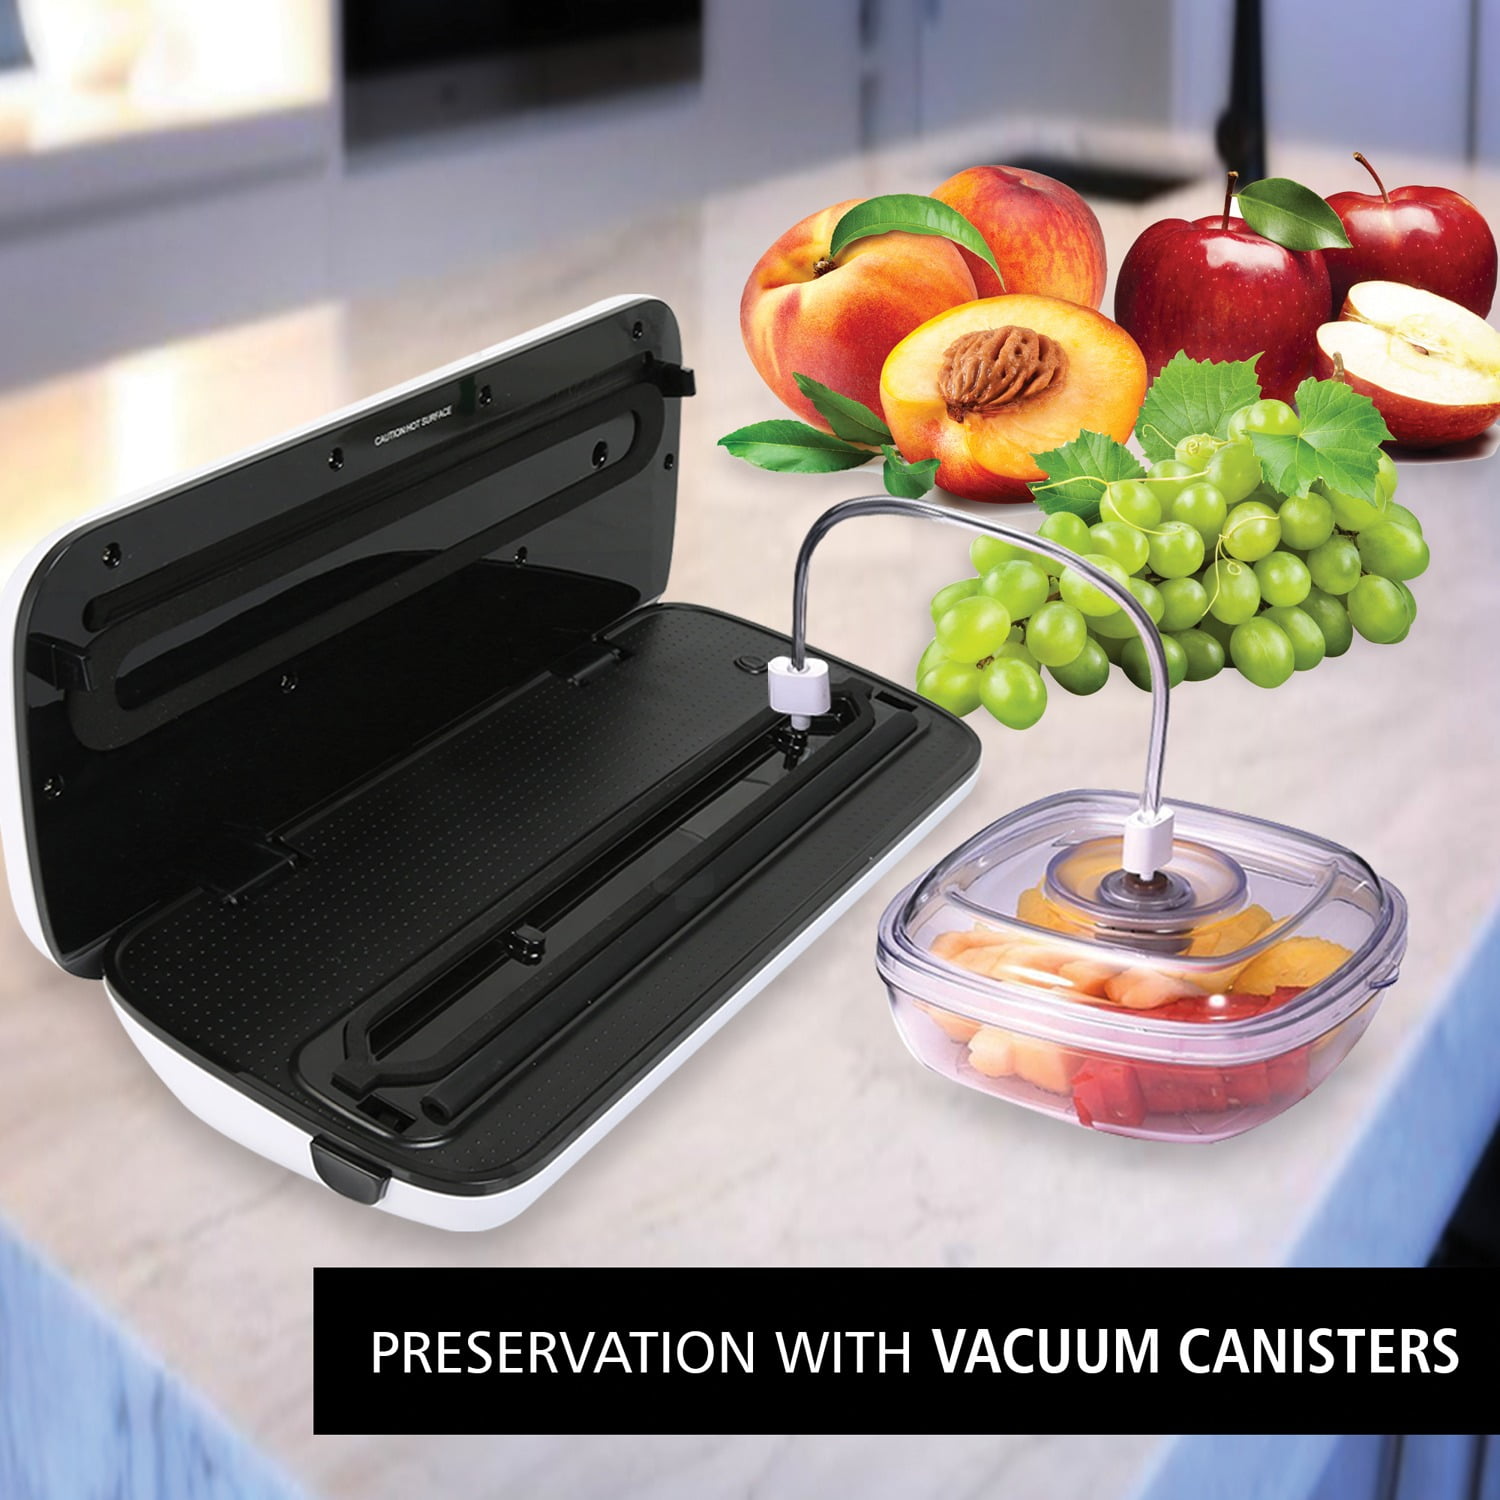 Automatic Food Vacuum Sealer, Includes Reusable Bags, PKVS25BK